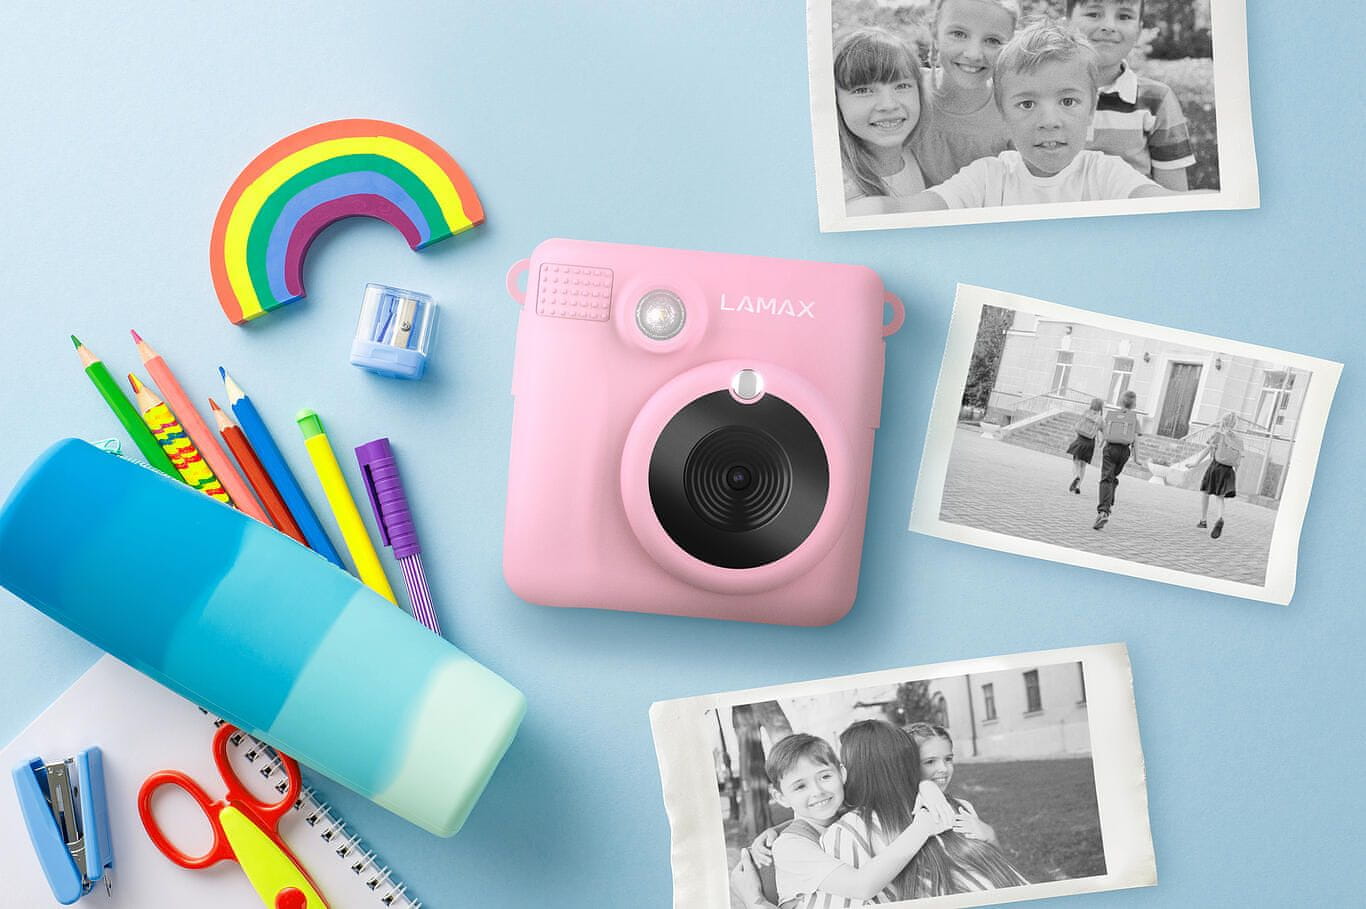  instantní fotoaparát pro děti lamax instakid1 krásný design rolička termopapíru skvělé efekty a rámečky nabíjecí baterie hry 8mpx rozlišení 